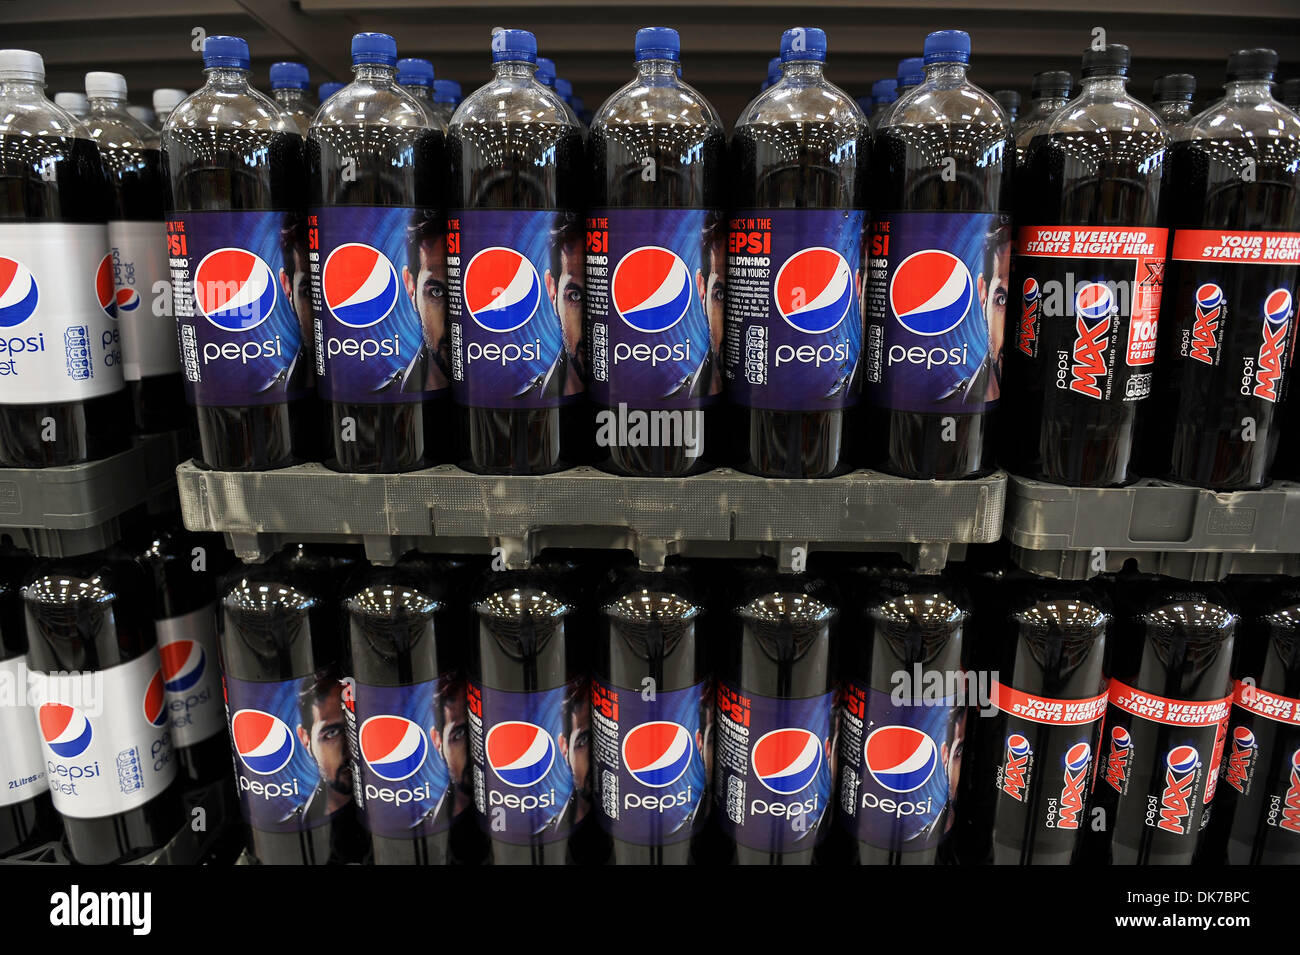 Supermarkt-Interieur zeigt Flaschen Pepsi, England, UK Stockfoto